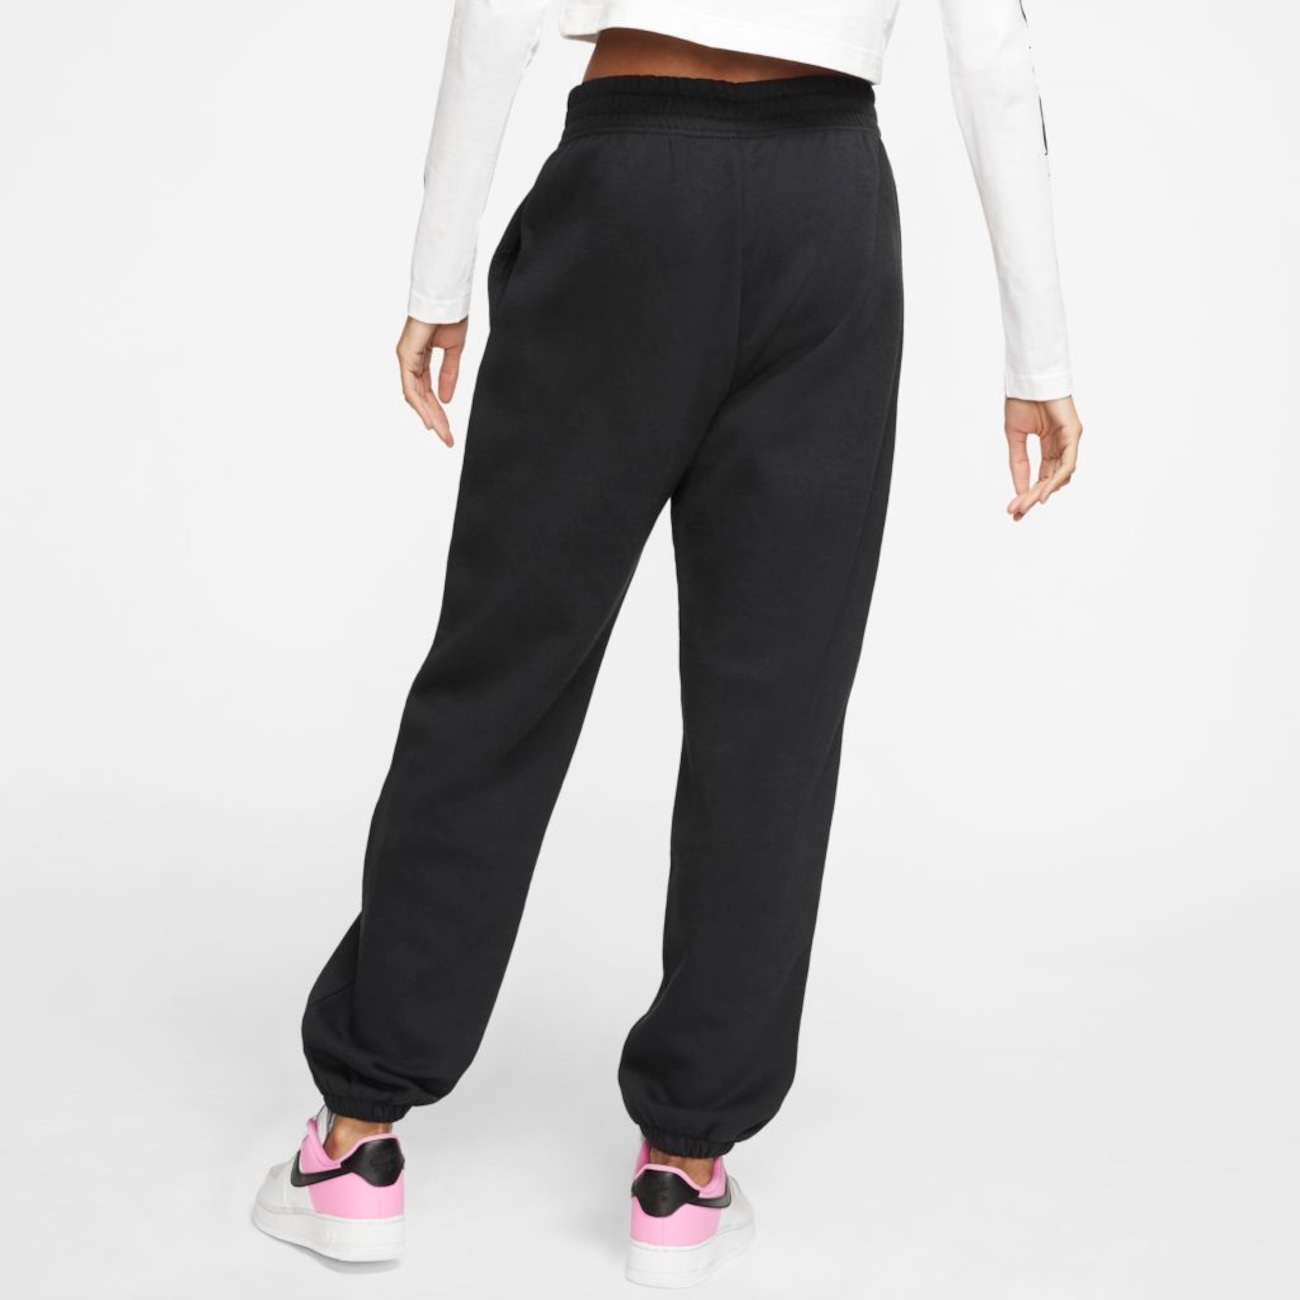 Calça Nike Sportswear Essential Collection Feminina - Foto 2